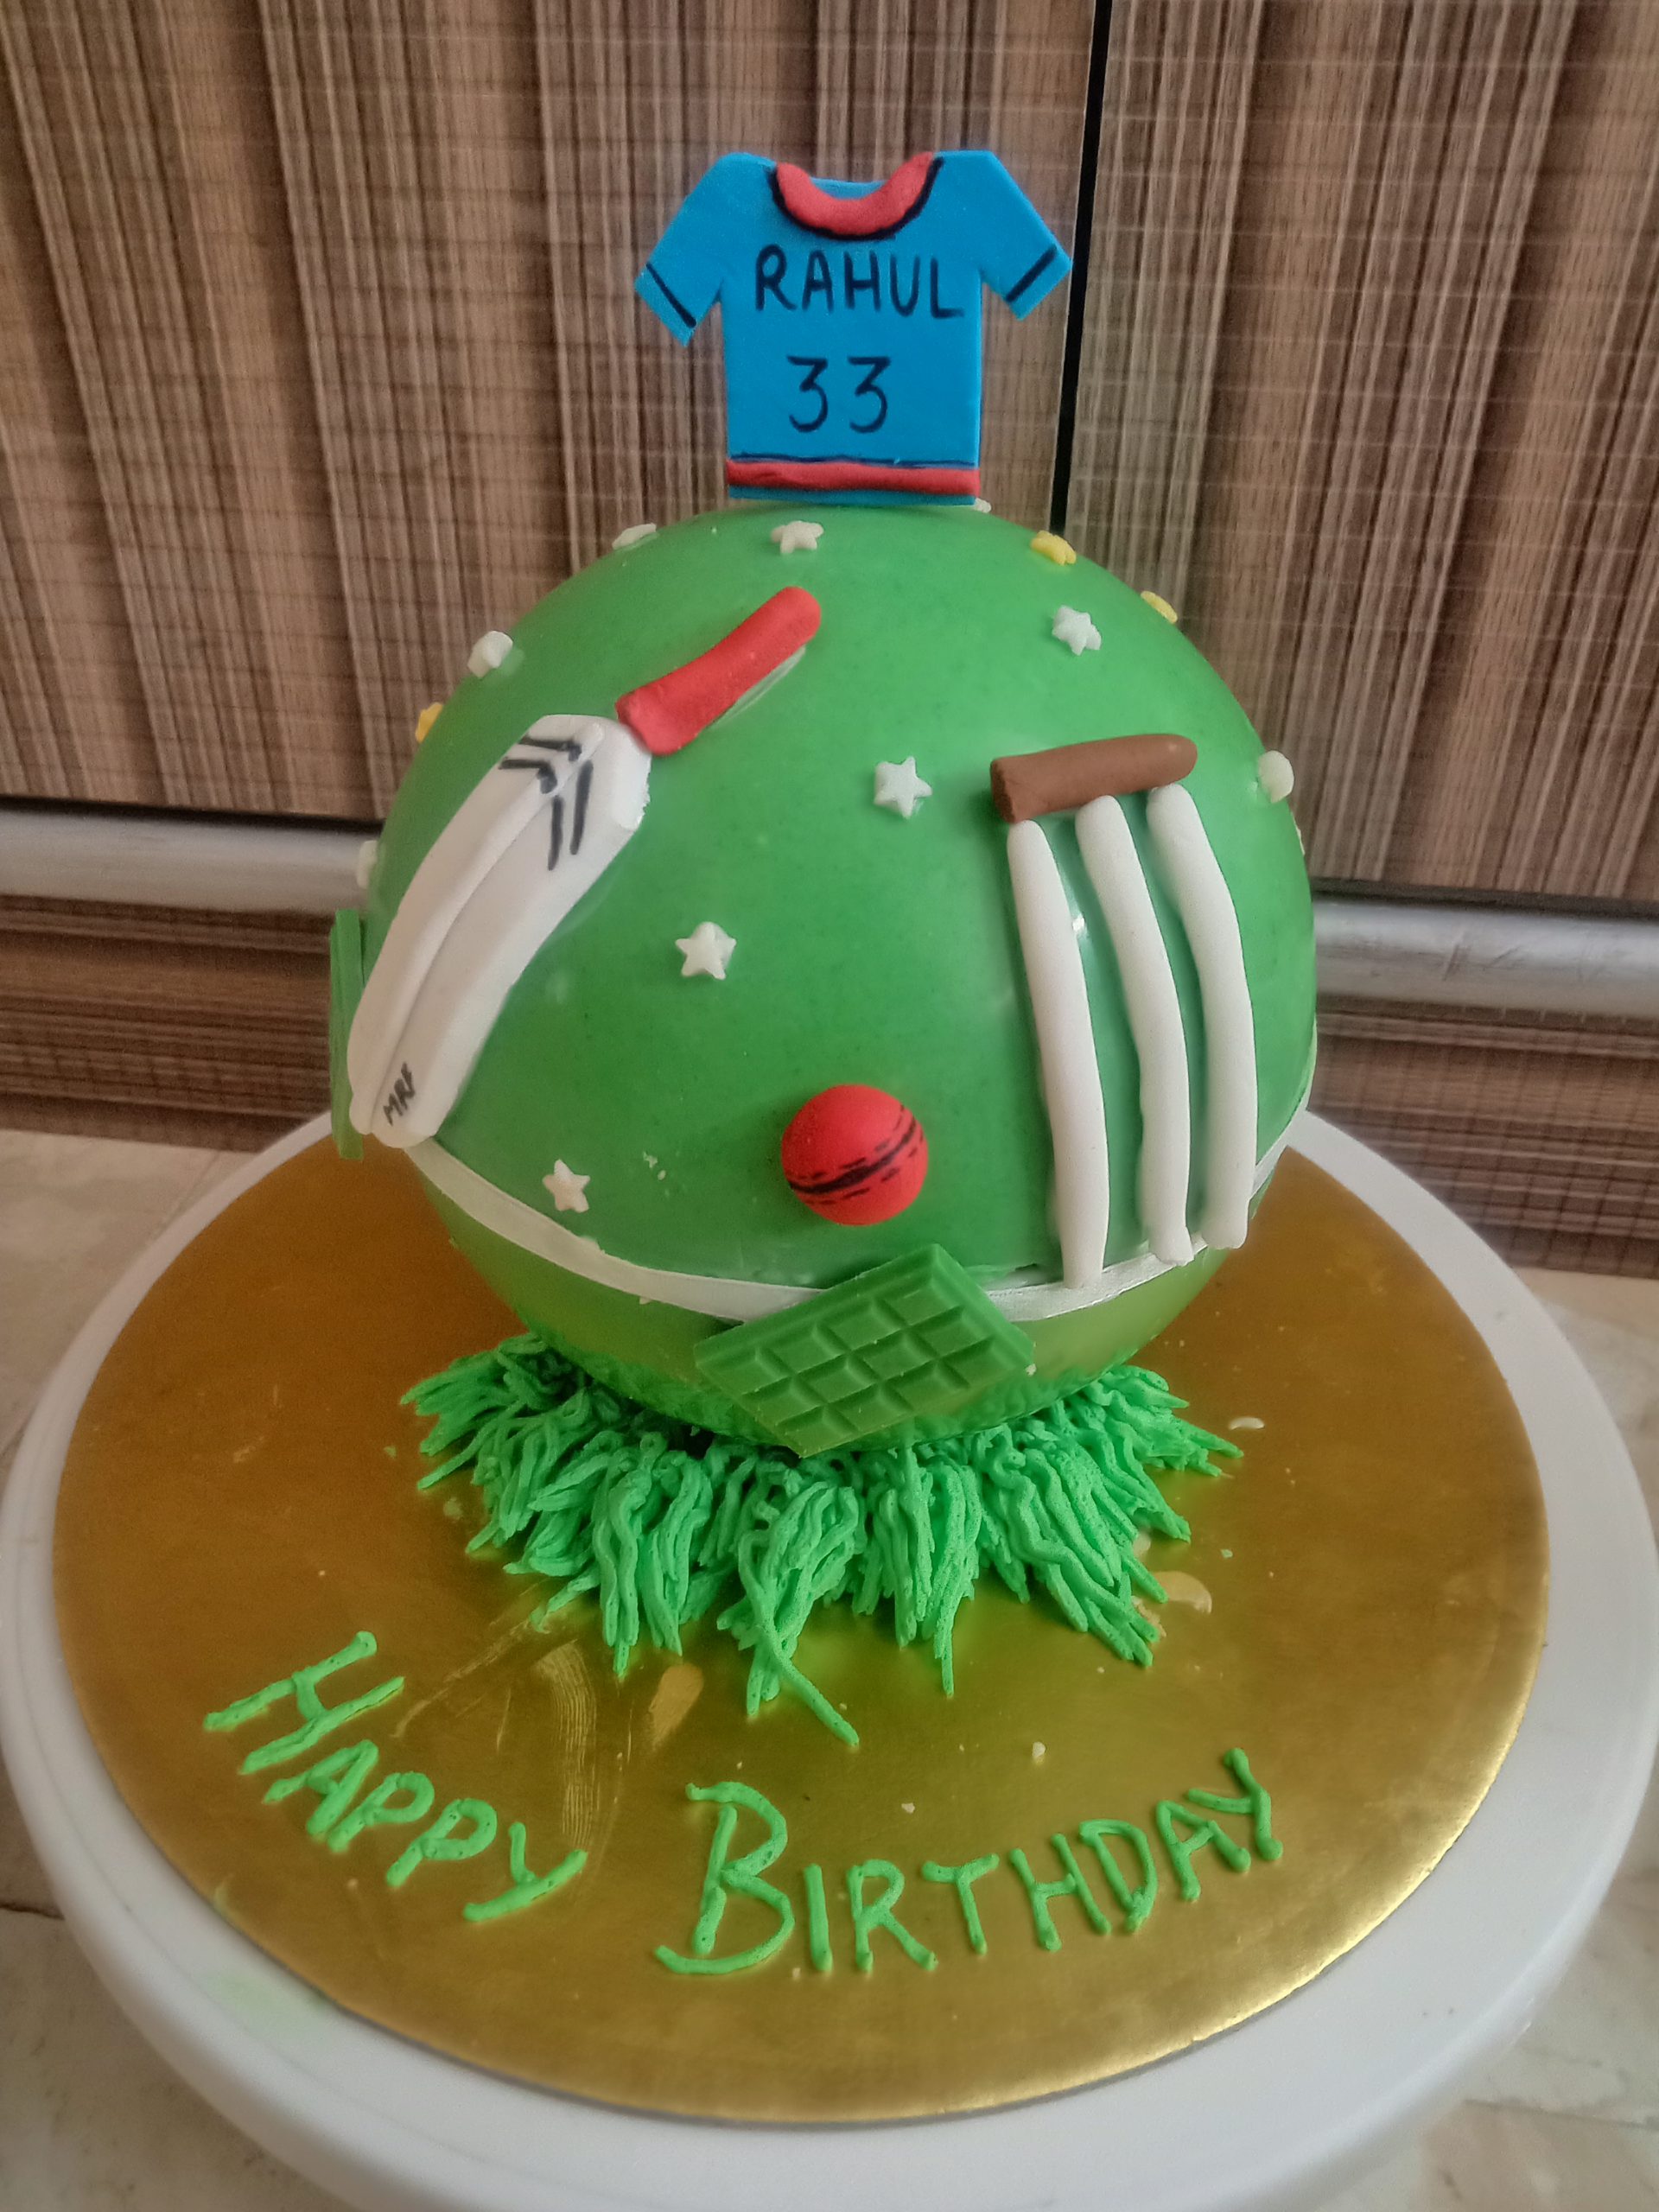 IPL cricket theme cake ordered... - Sweet Infusion - By Usha | Facebook